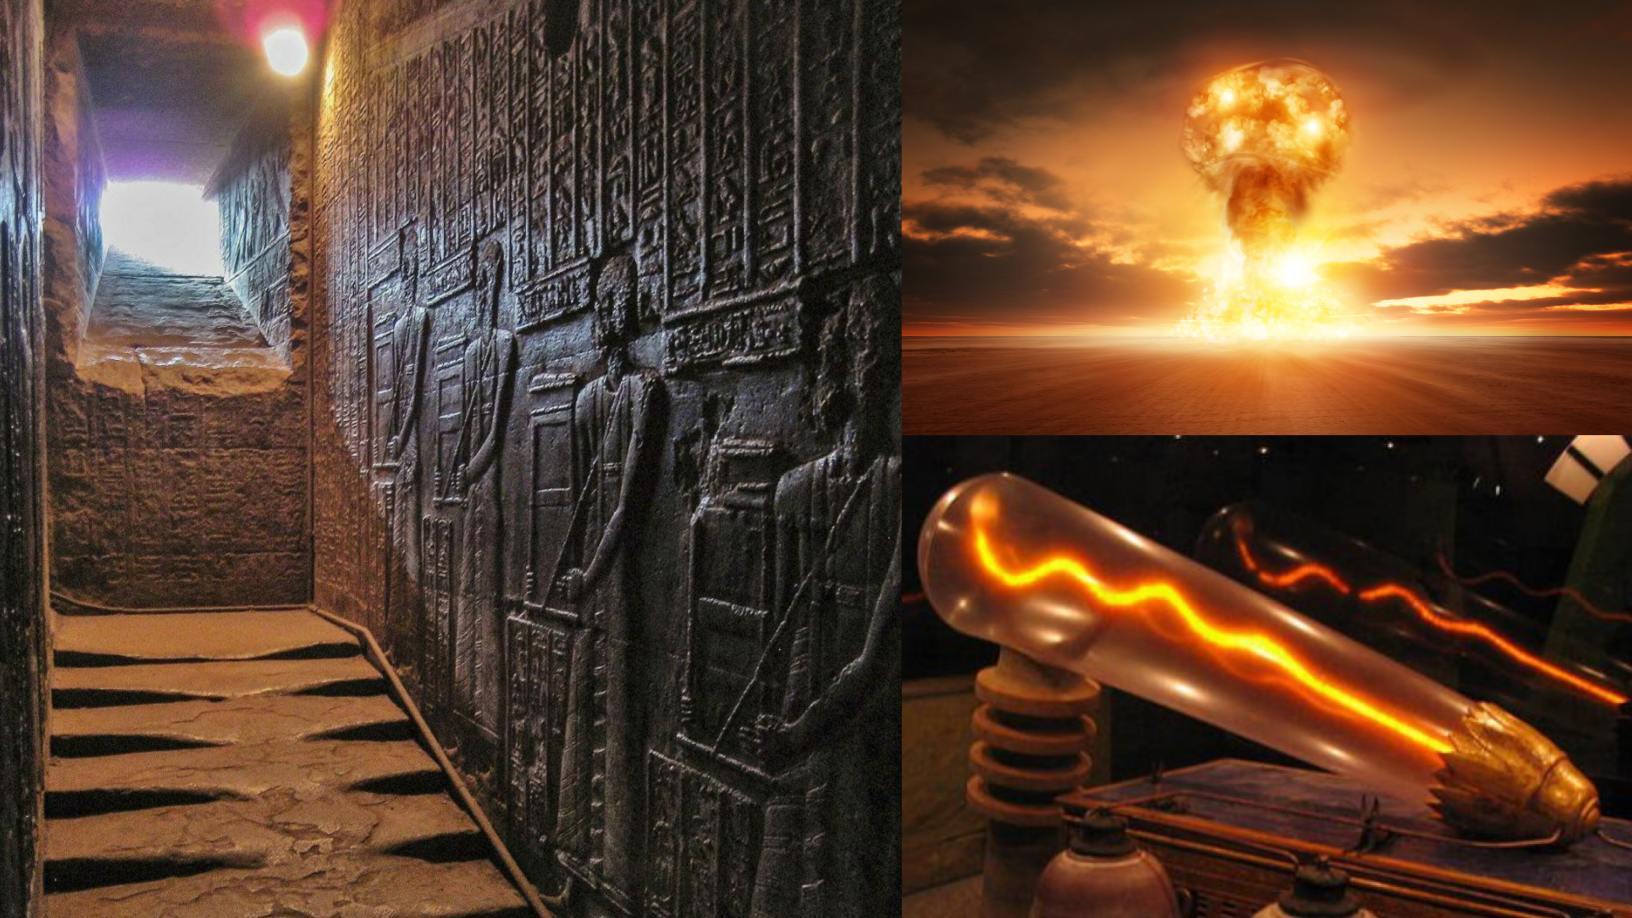 Escaliers fondus au temple Hathor: que se serait-il passé dans le passé? 1